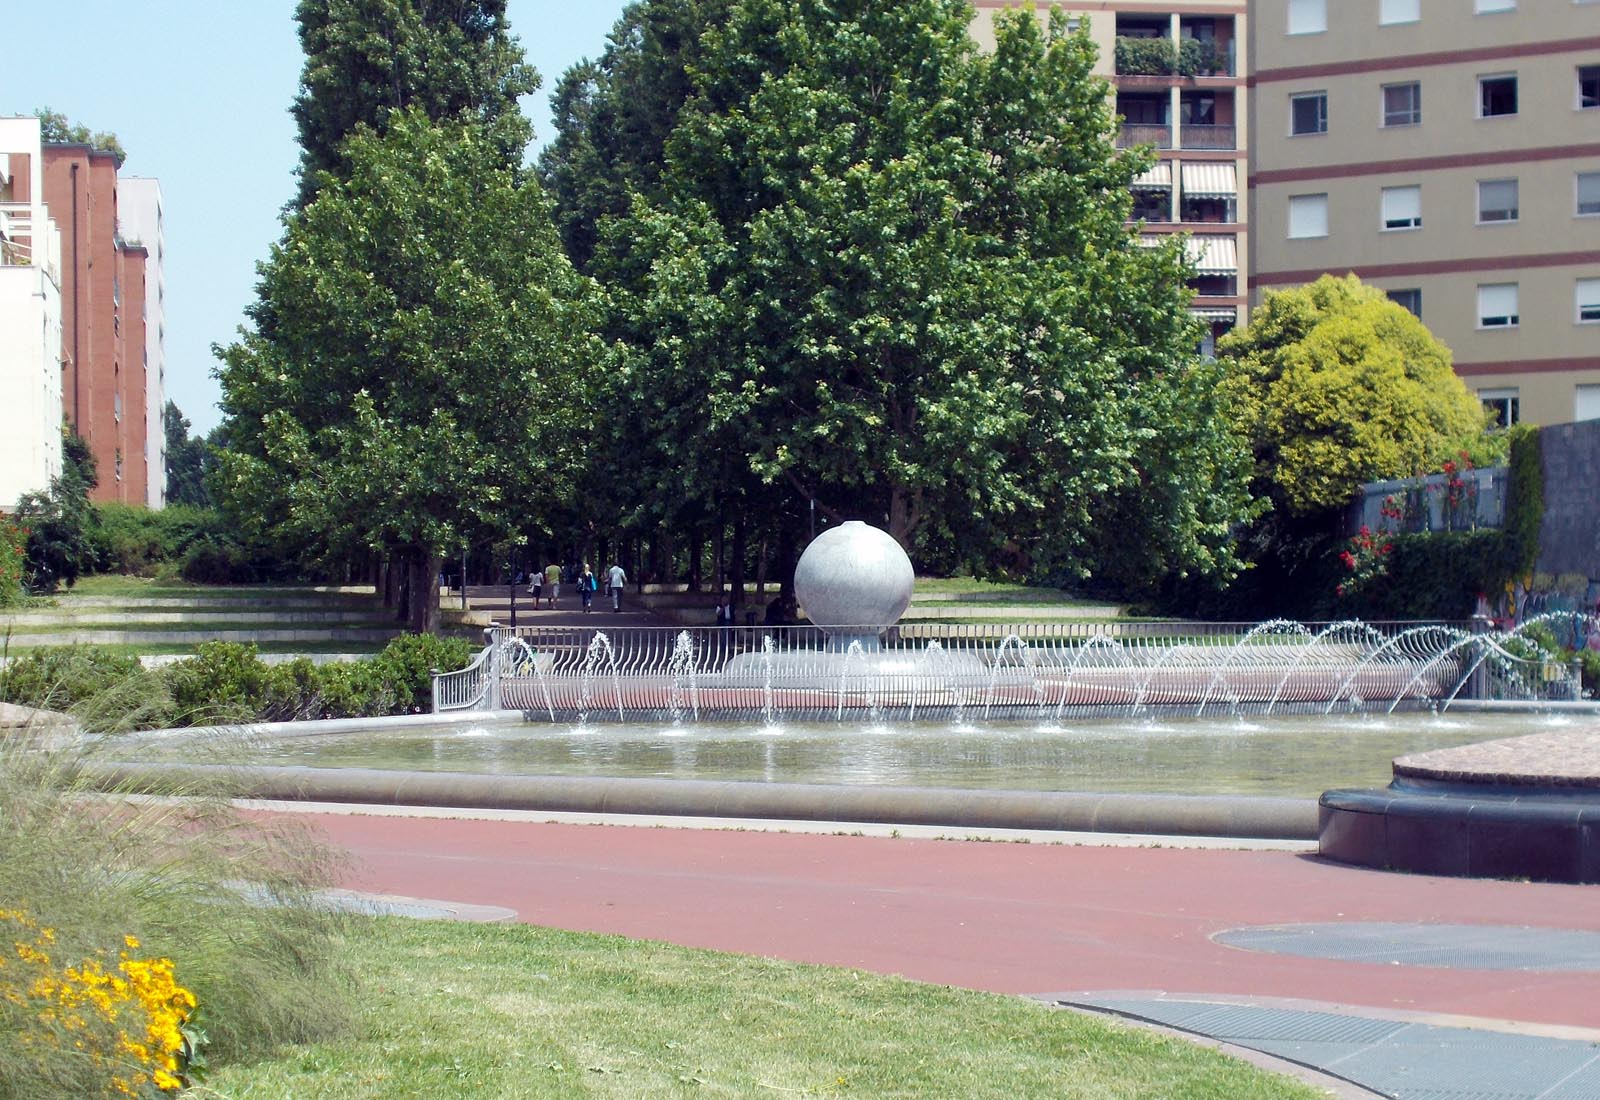 Piazza Vigili del fuoco - La fontana